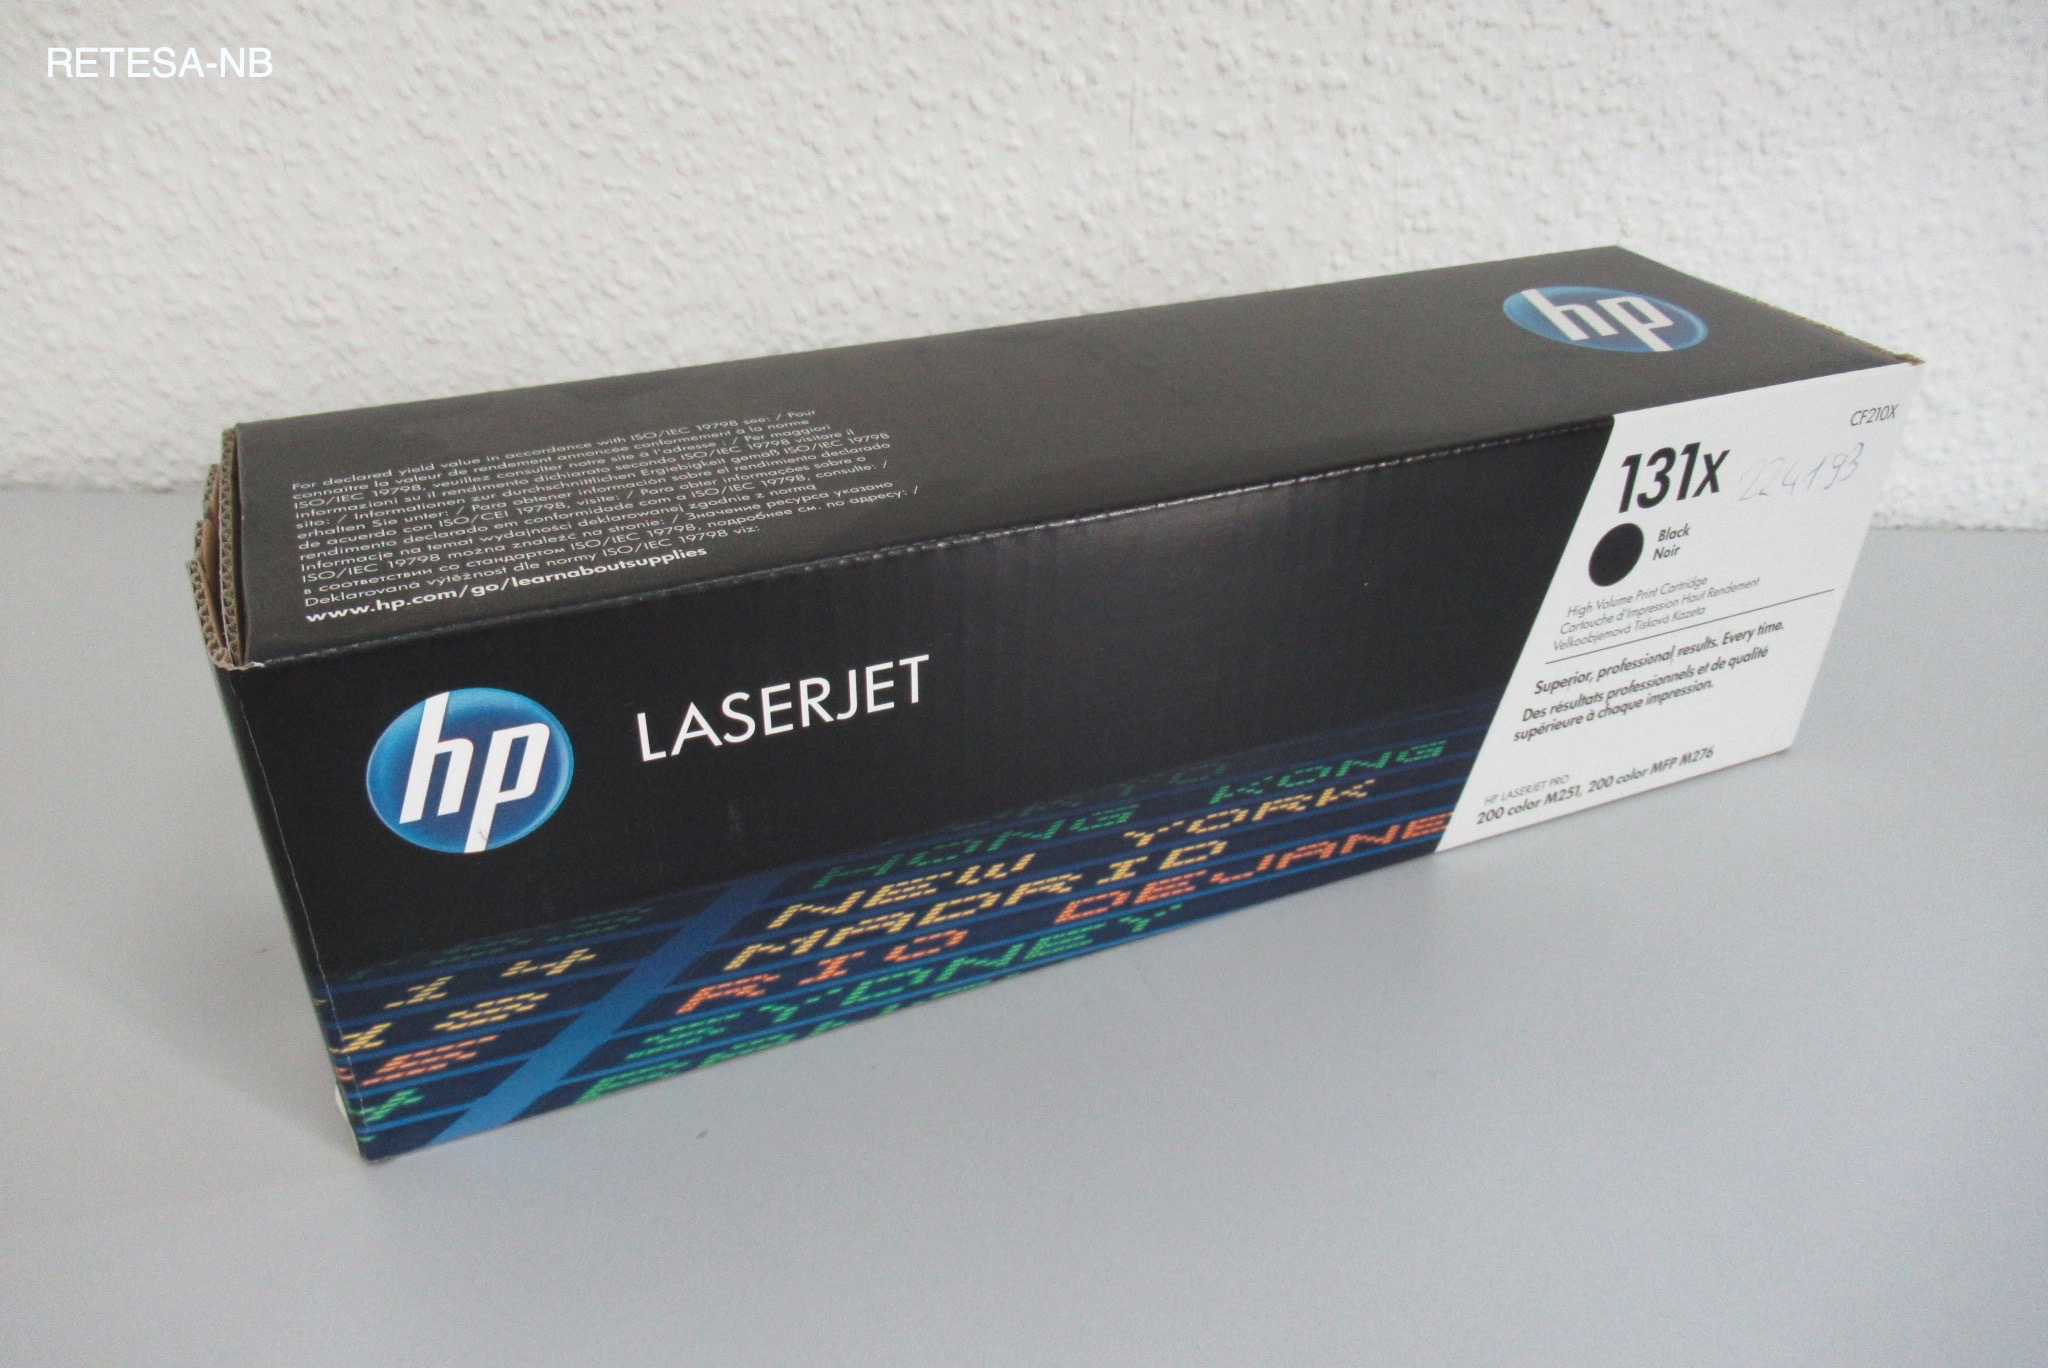 Toner HP CF210X für LaserJet Pro 200 schwarz